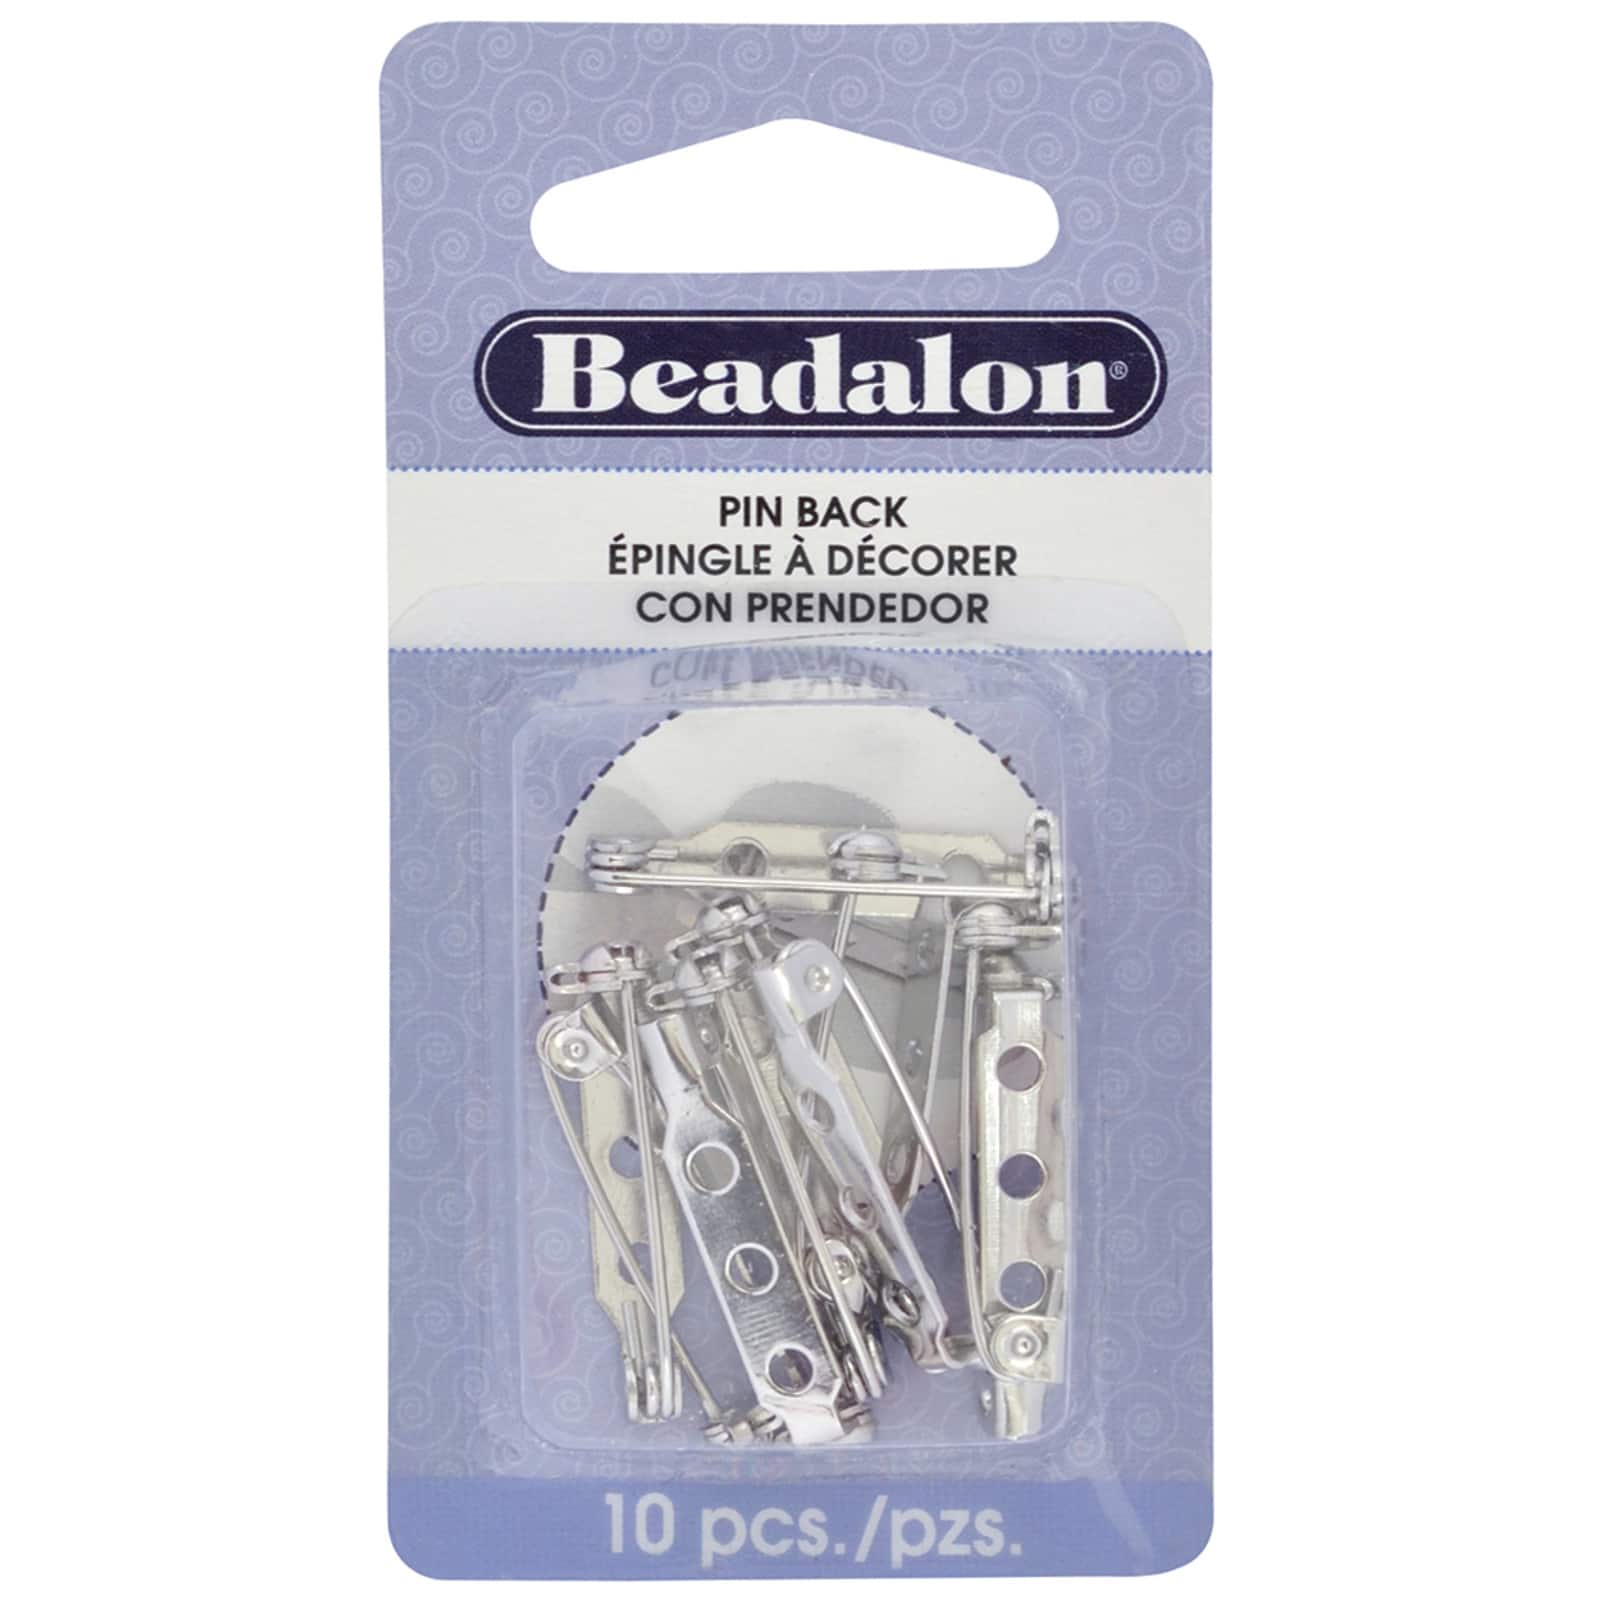 12 Packs: 10 ct. (120 total) Beadalon&#xAE; Rhodium-Plated Pin Backs